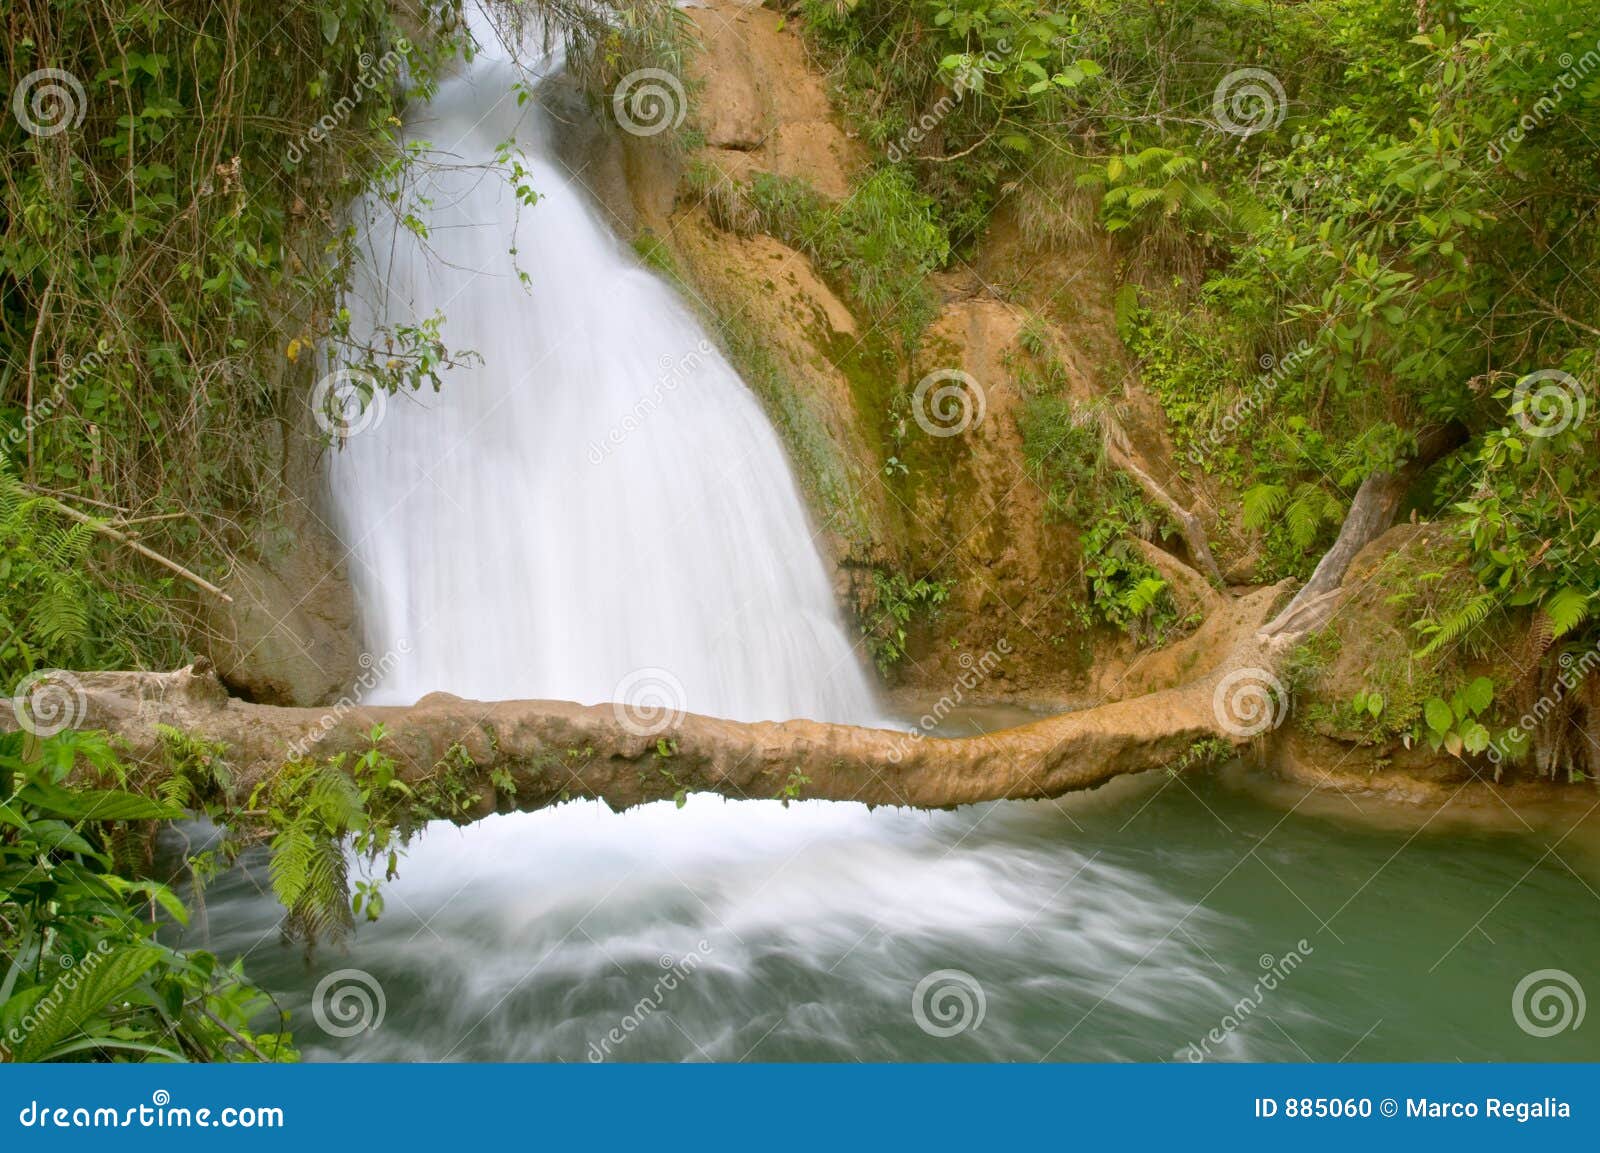 agua azul waterfall